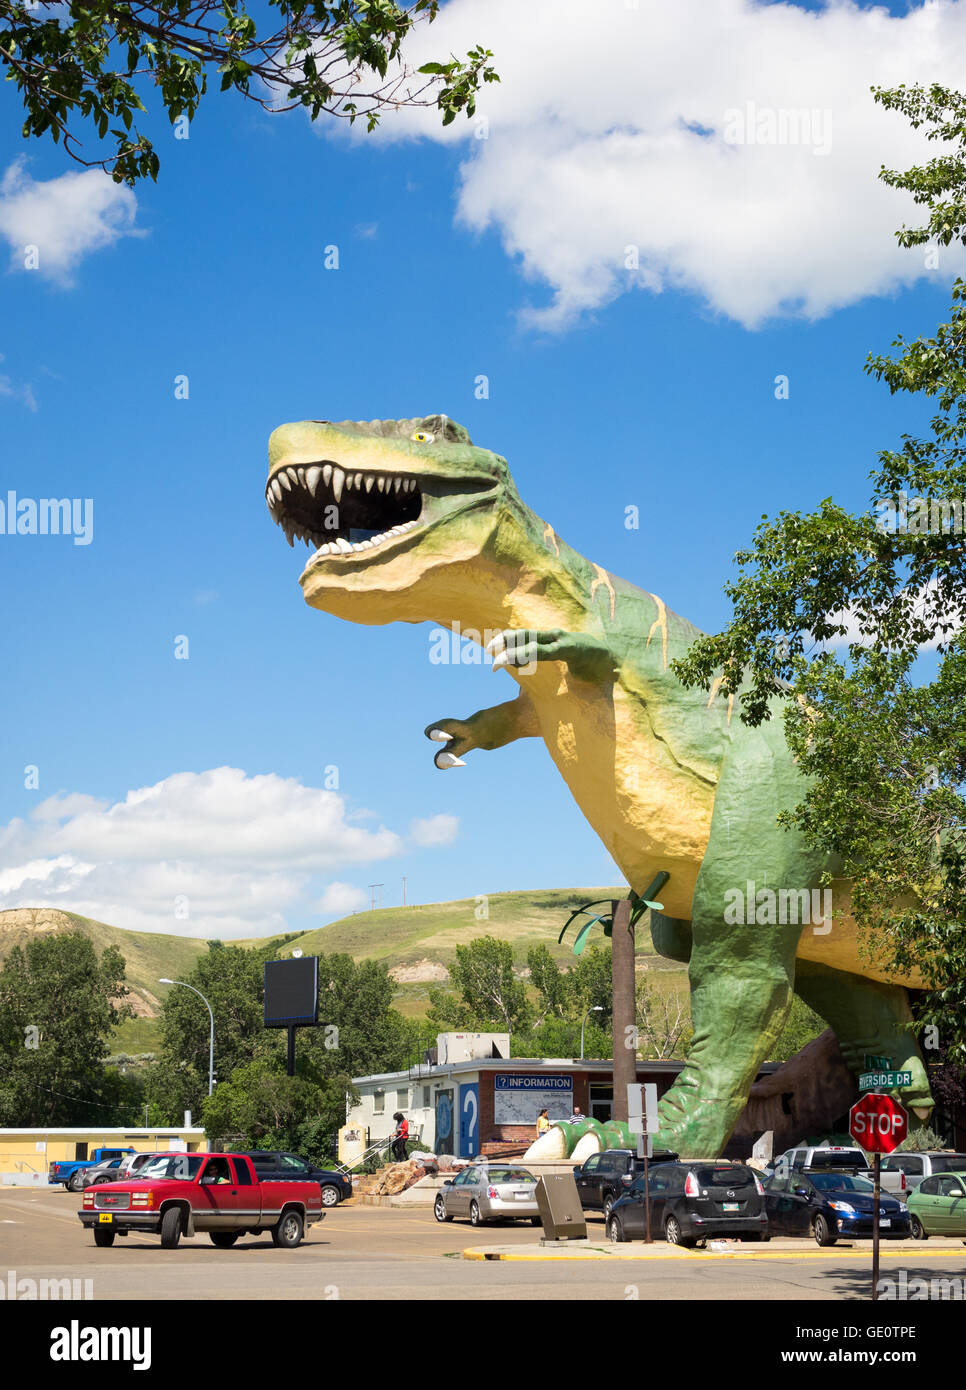 Des weltweit größte Dinosaurier - 82-Fuß (46 m) hohe Tyrannosaurus Rex - erhebt sich über Drumheller, Alberta, Kanada. Stockfoto